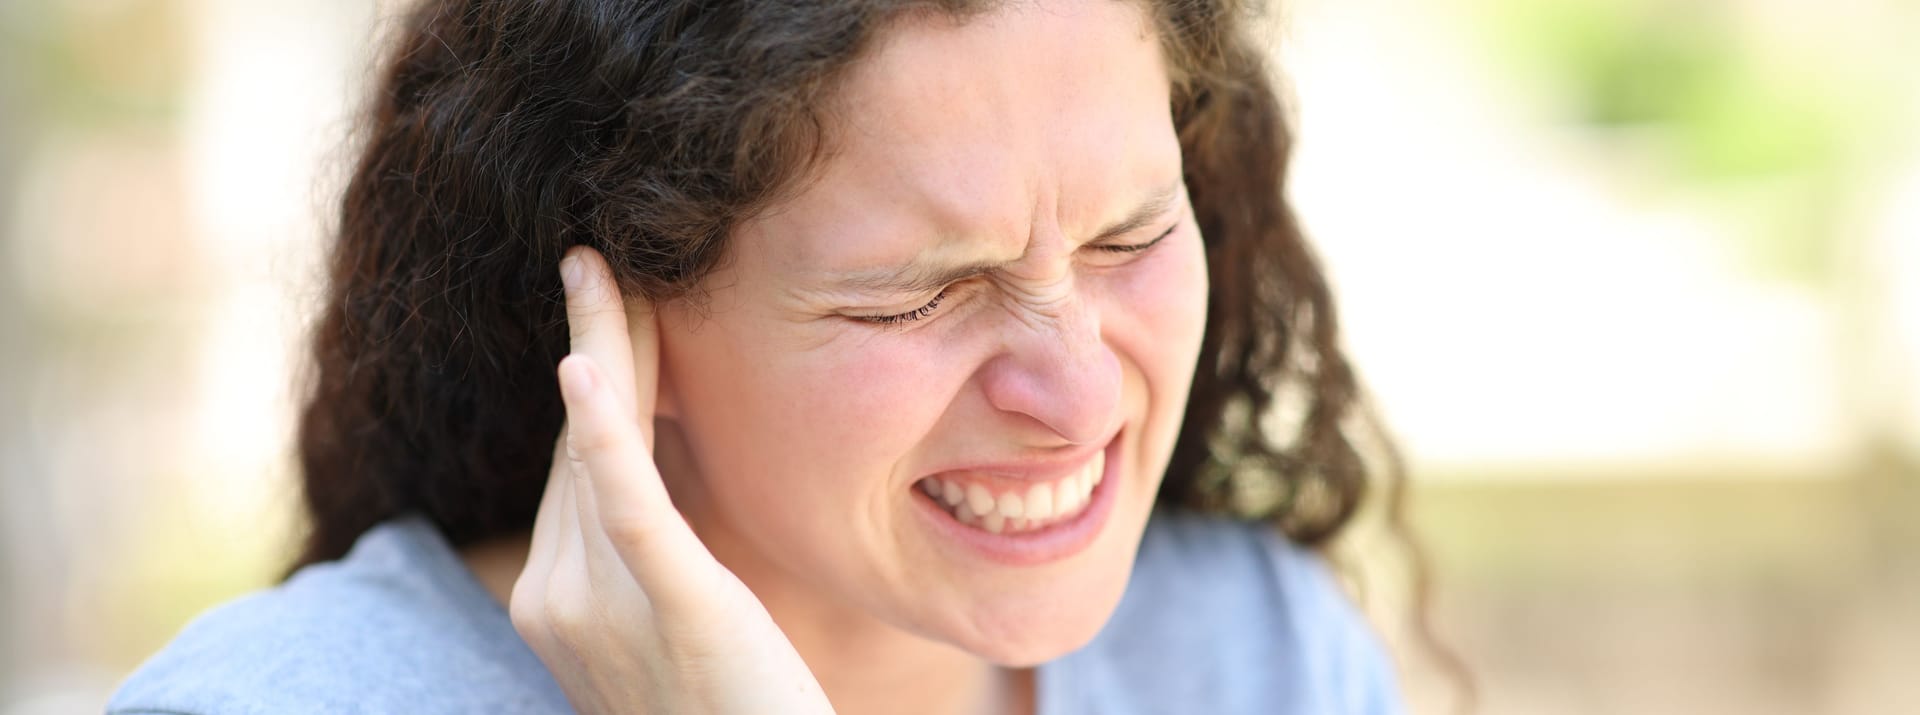 Ein Hörsturz betrifft meistens nur eine Seite des Gehörs und das unterschiedlich stark. Entweder ist das betroffene Ohr gänzlich taub, was sehr selten vorkommt oder nur teilweise gestört, sodass bestimmte Frequenzen nicht mehr wahrgenommen werden.